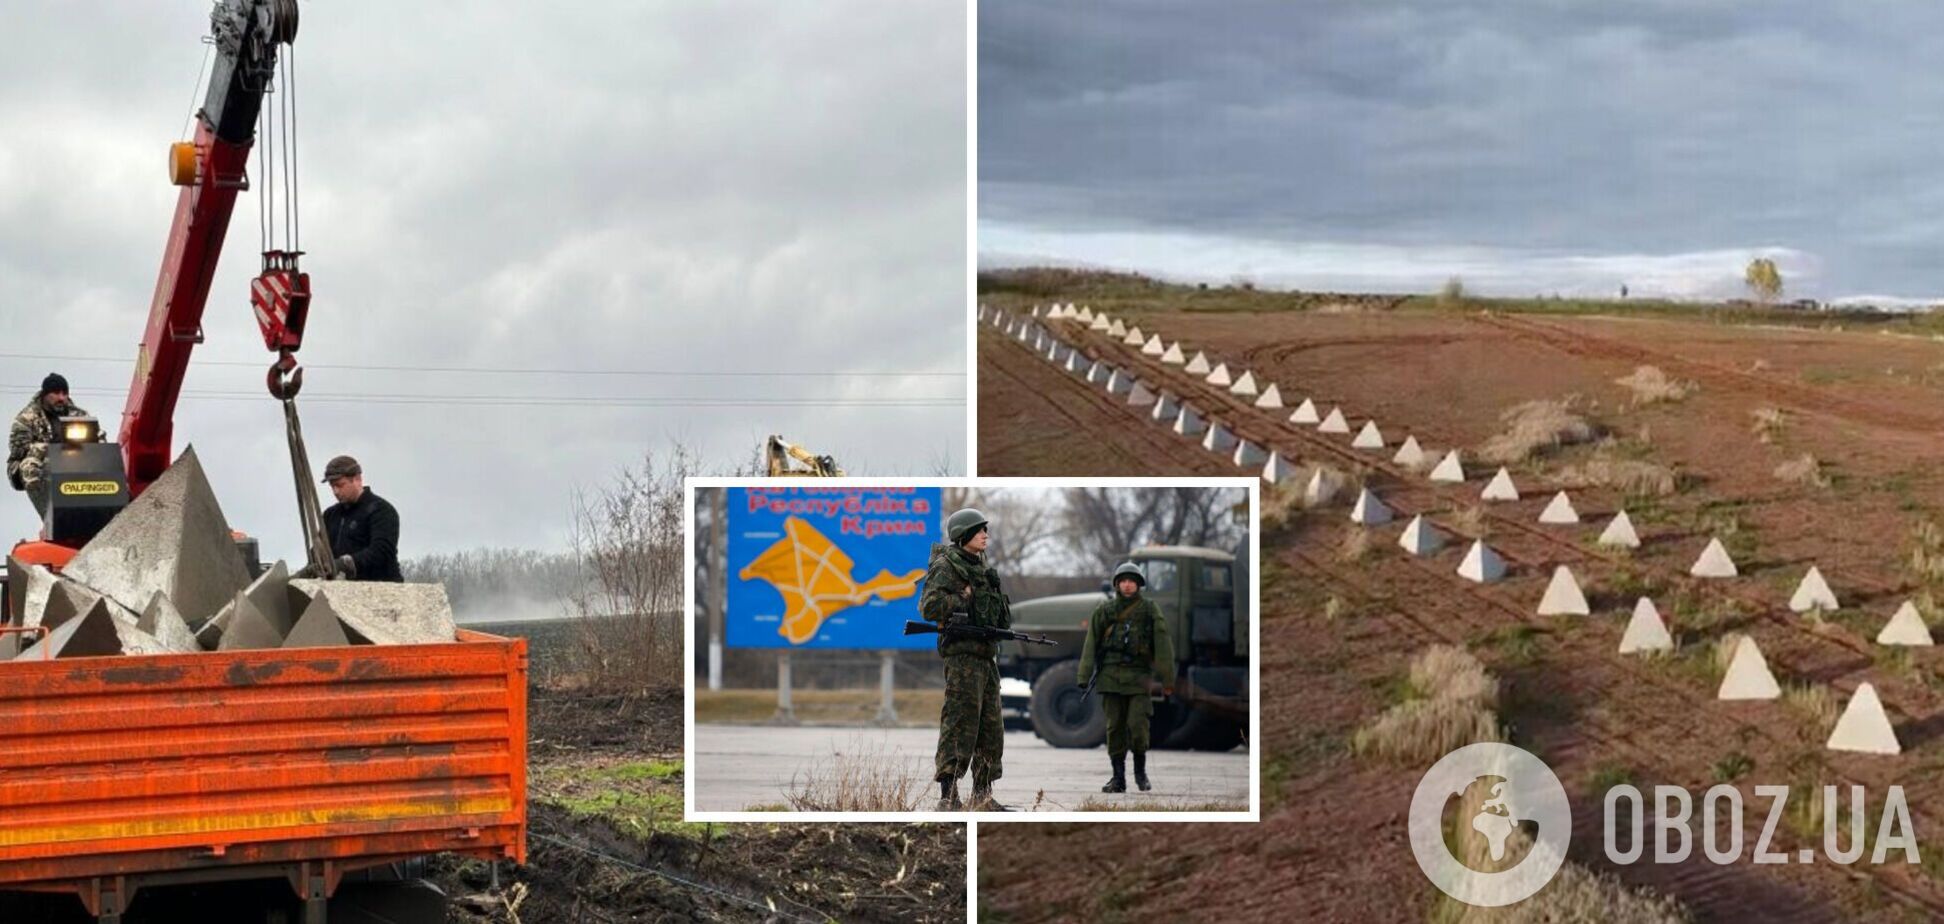 Россия готовится к обороне Крыма и массово строит защитные сооружения на оккупированном полуострове. Спутниковые фото